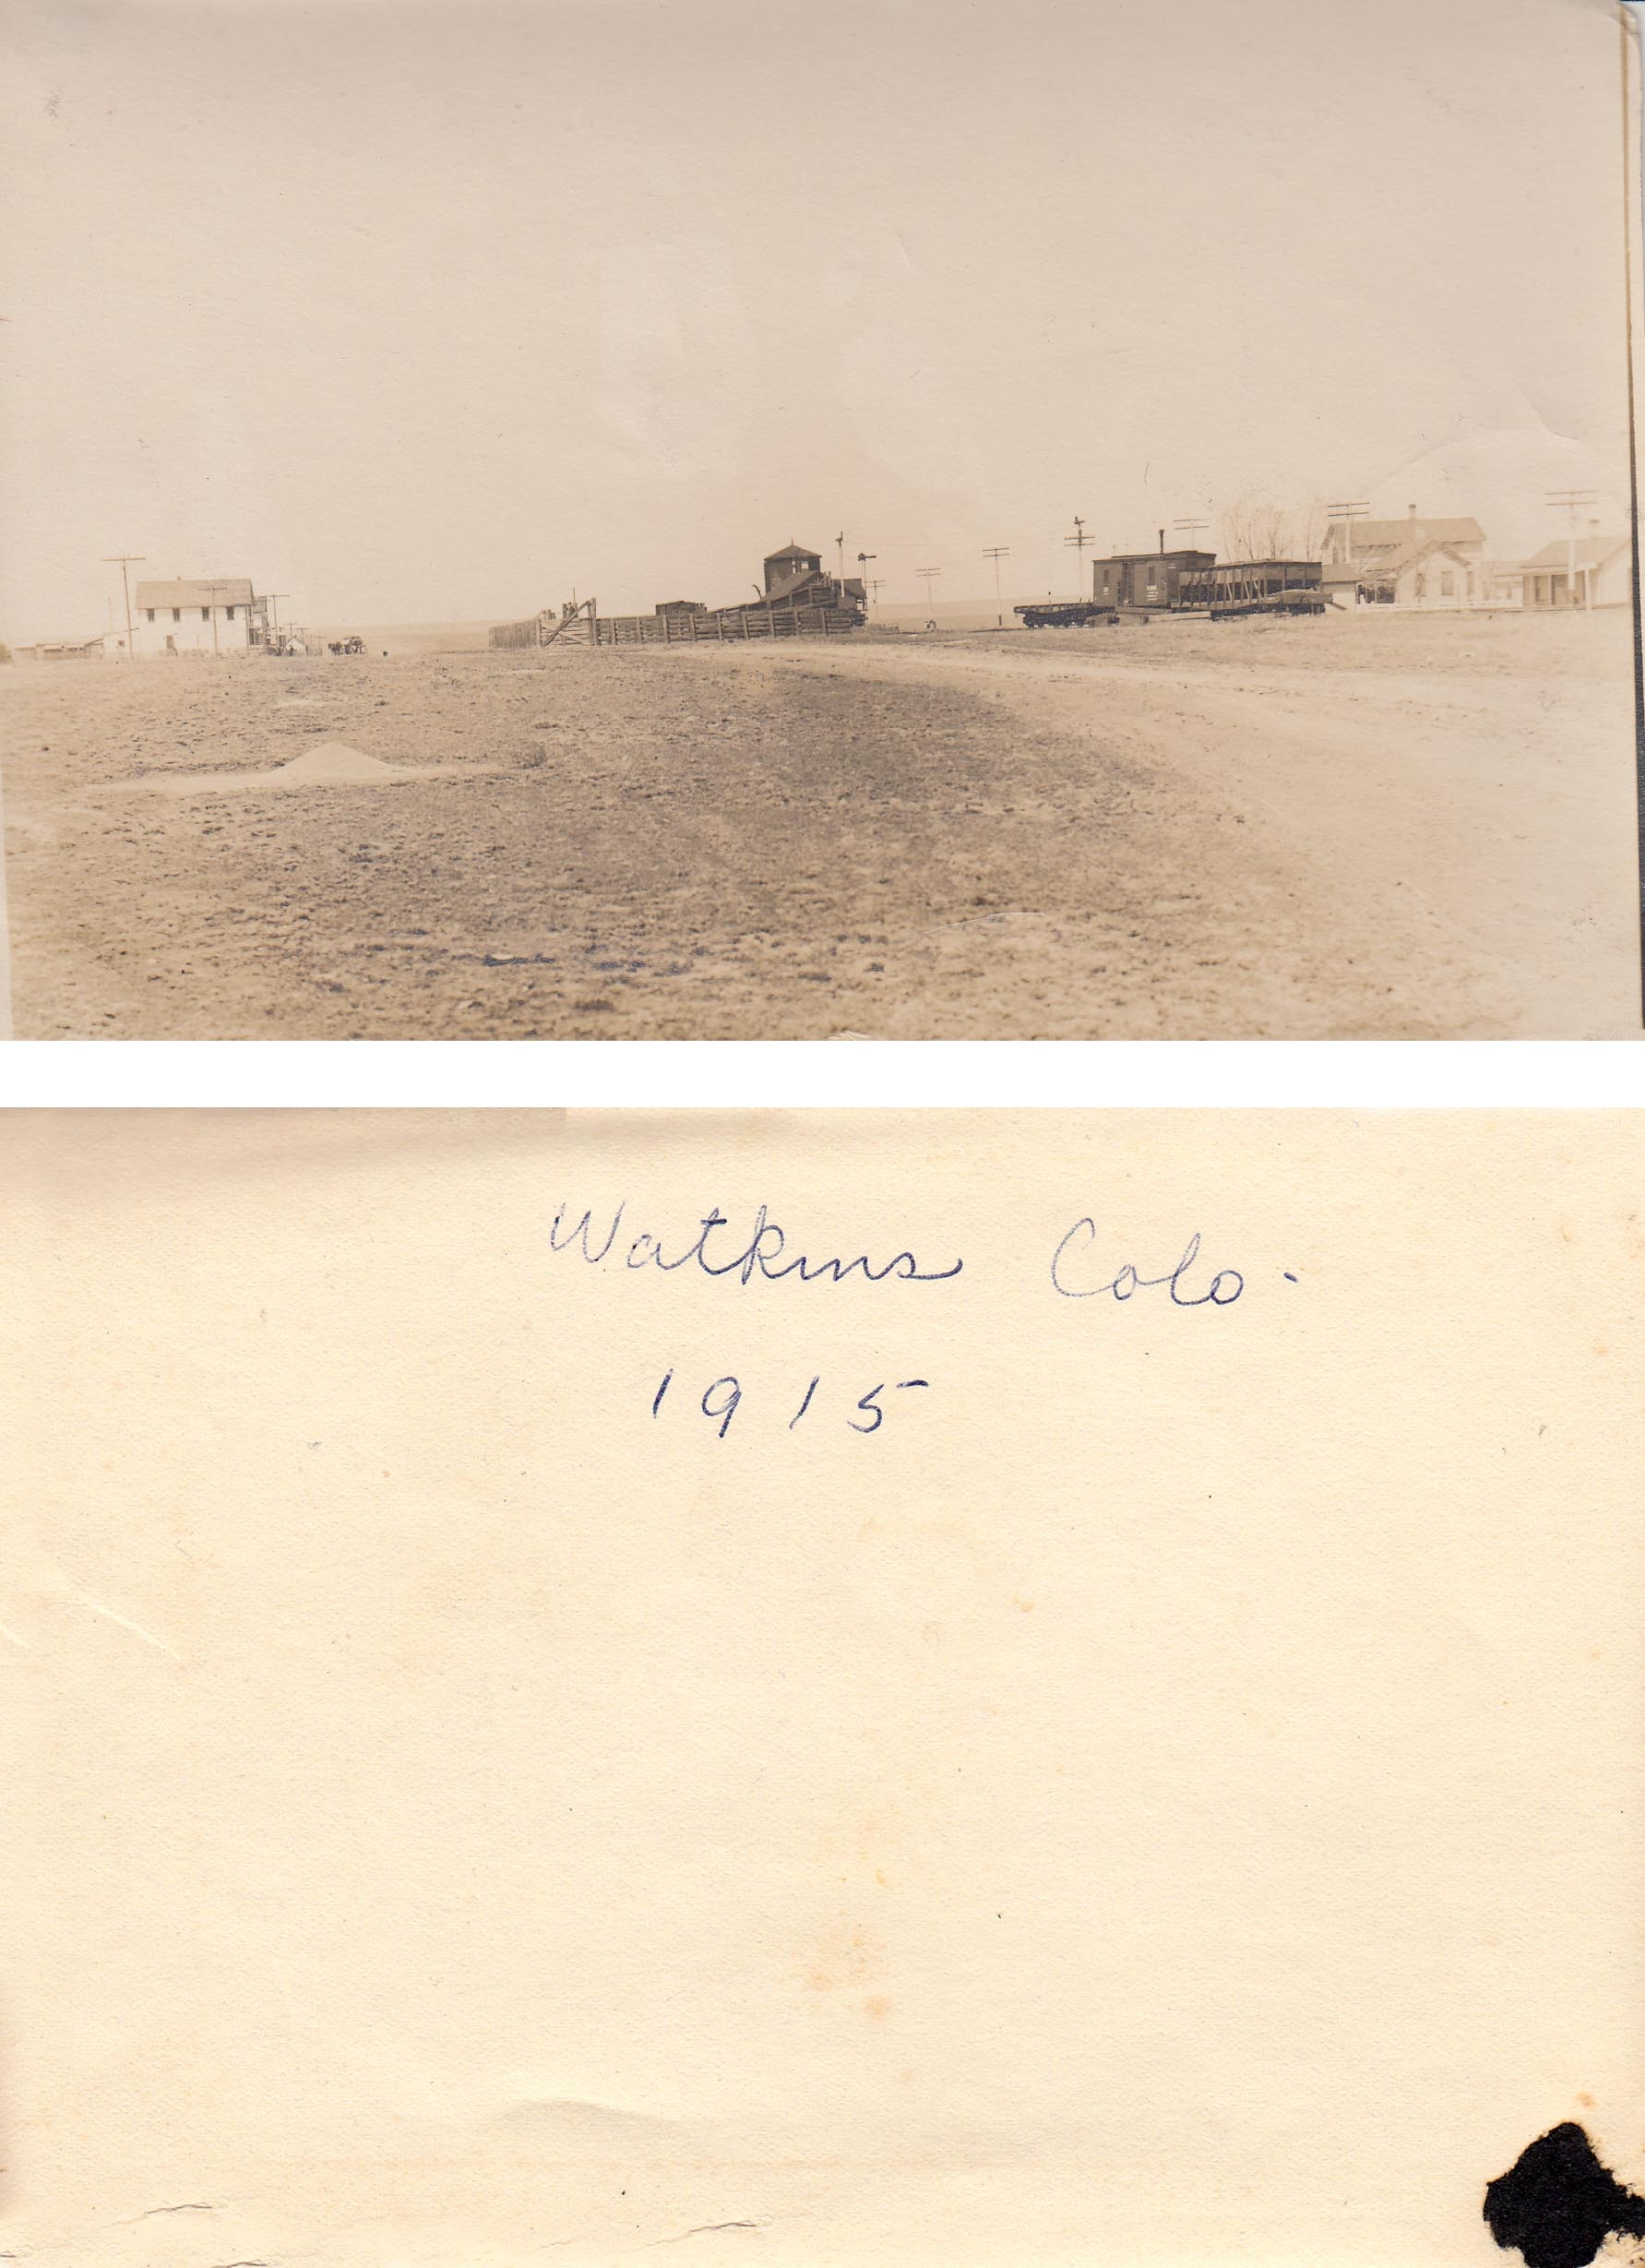 Watkins, Adams Co., Colorado - 1915 (001)